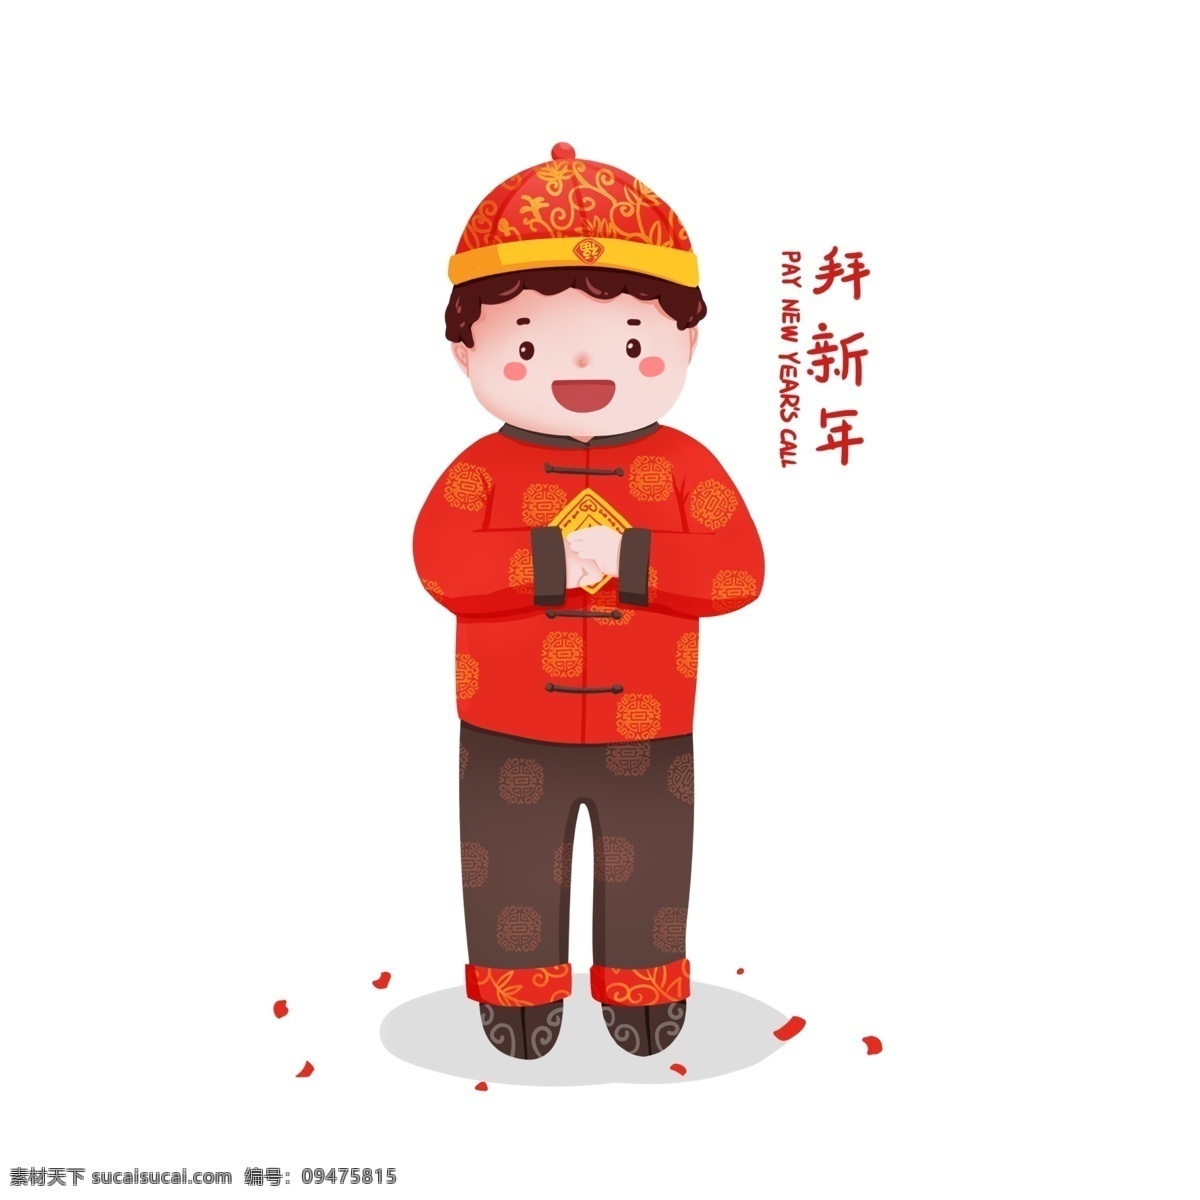 春节 猪年 年 俗 欢乐 过年 插画 拜 新年 男孩 元素 红色 卡通 2019 背景 红 手绘 拜新年